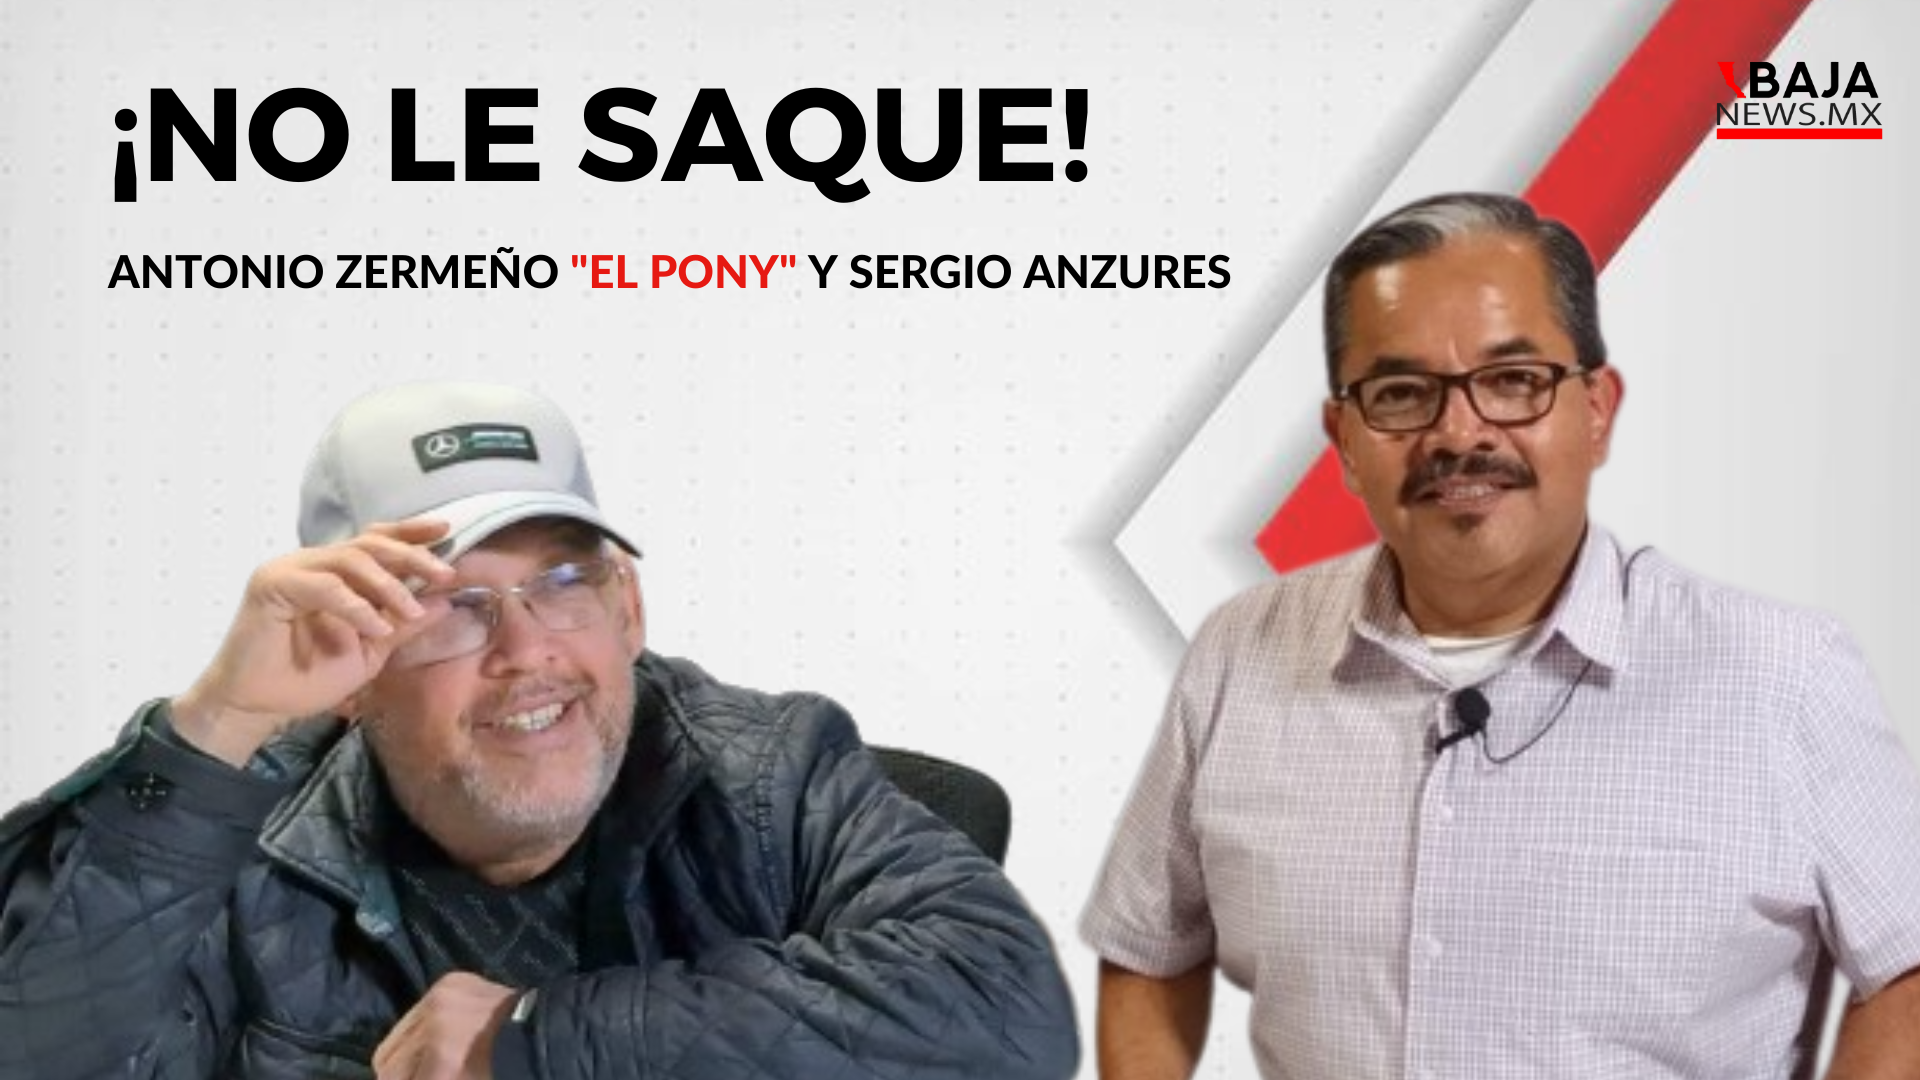 Nueva emisión del programa “No Le Saque” con Antonio Zermeño y Sergio Anzures